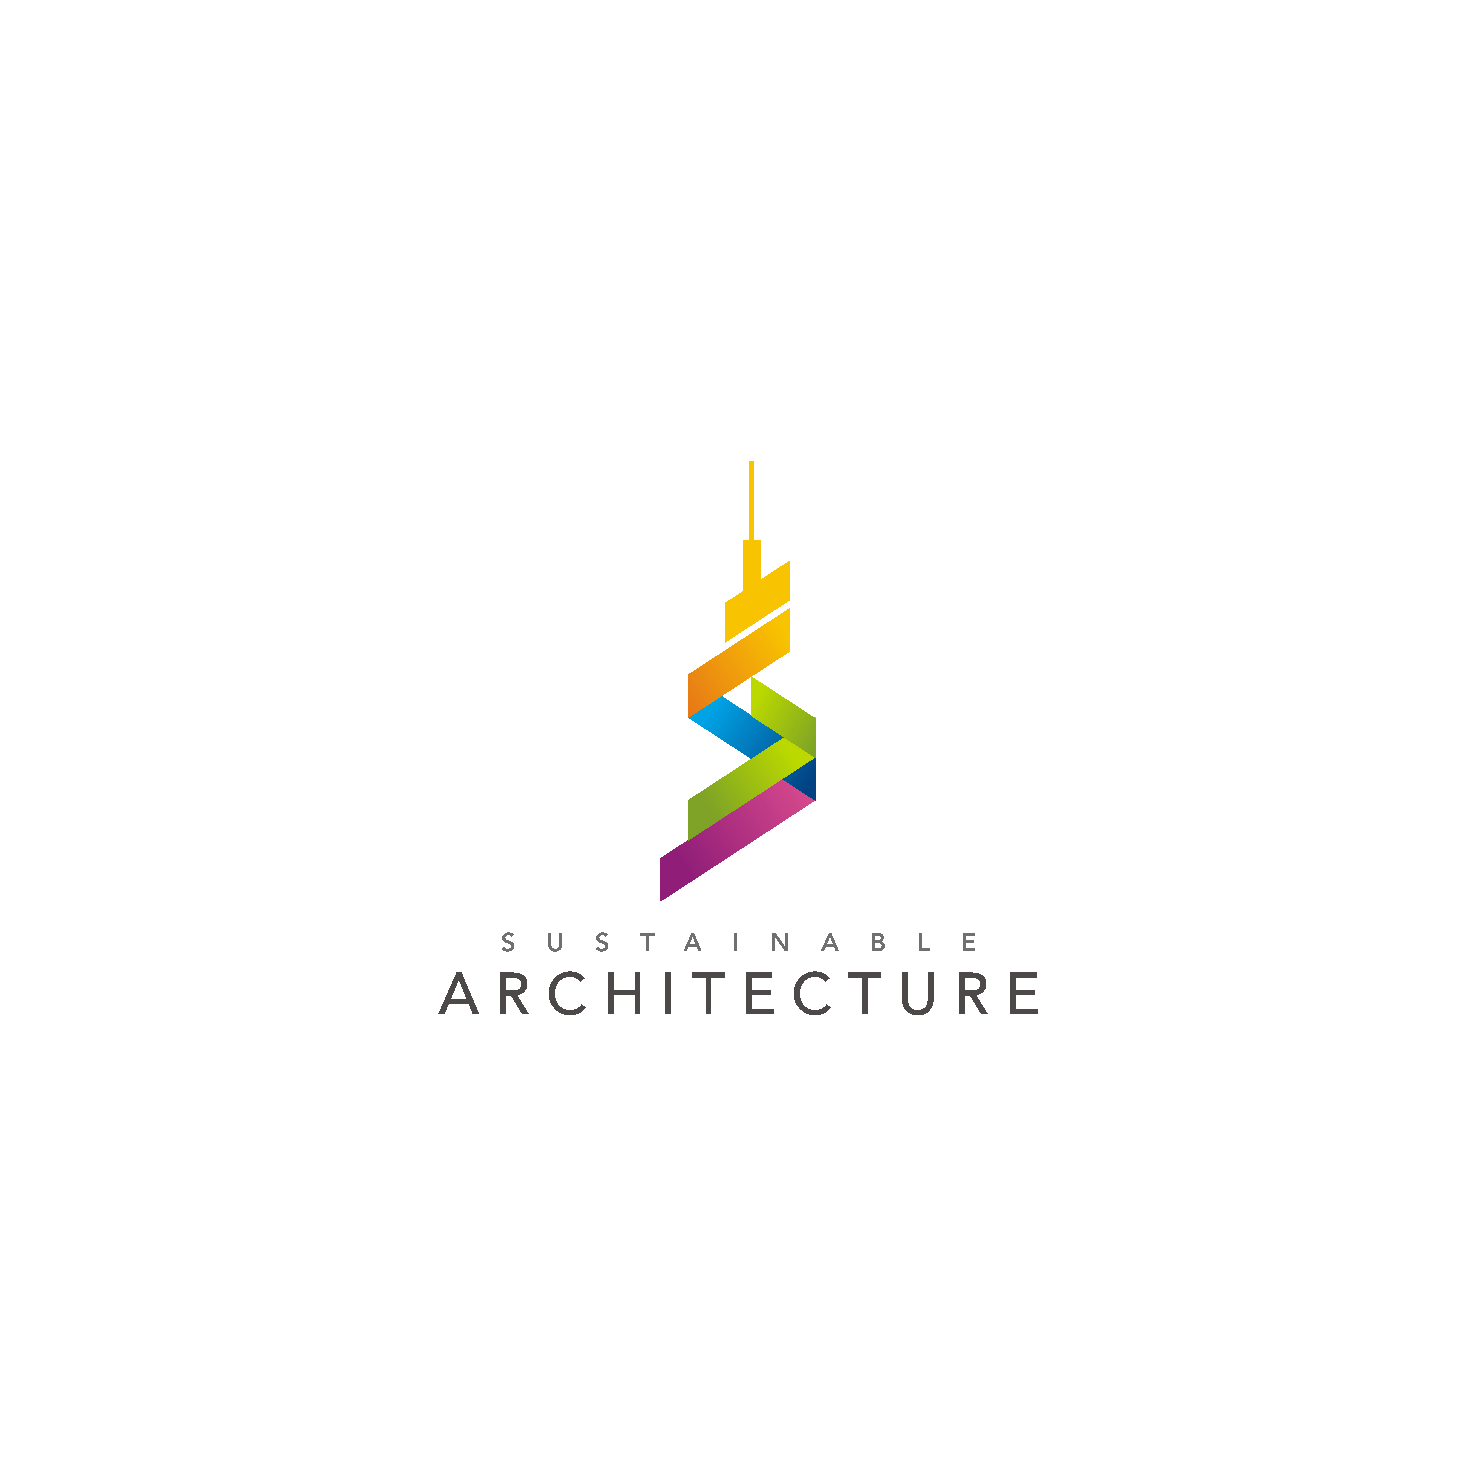 Architecture Logo - Architecture logo. Architecture. Architecture logo